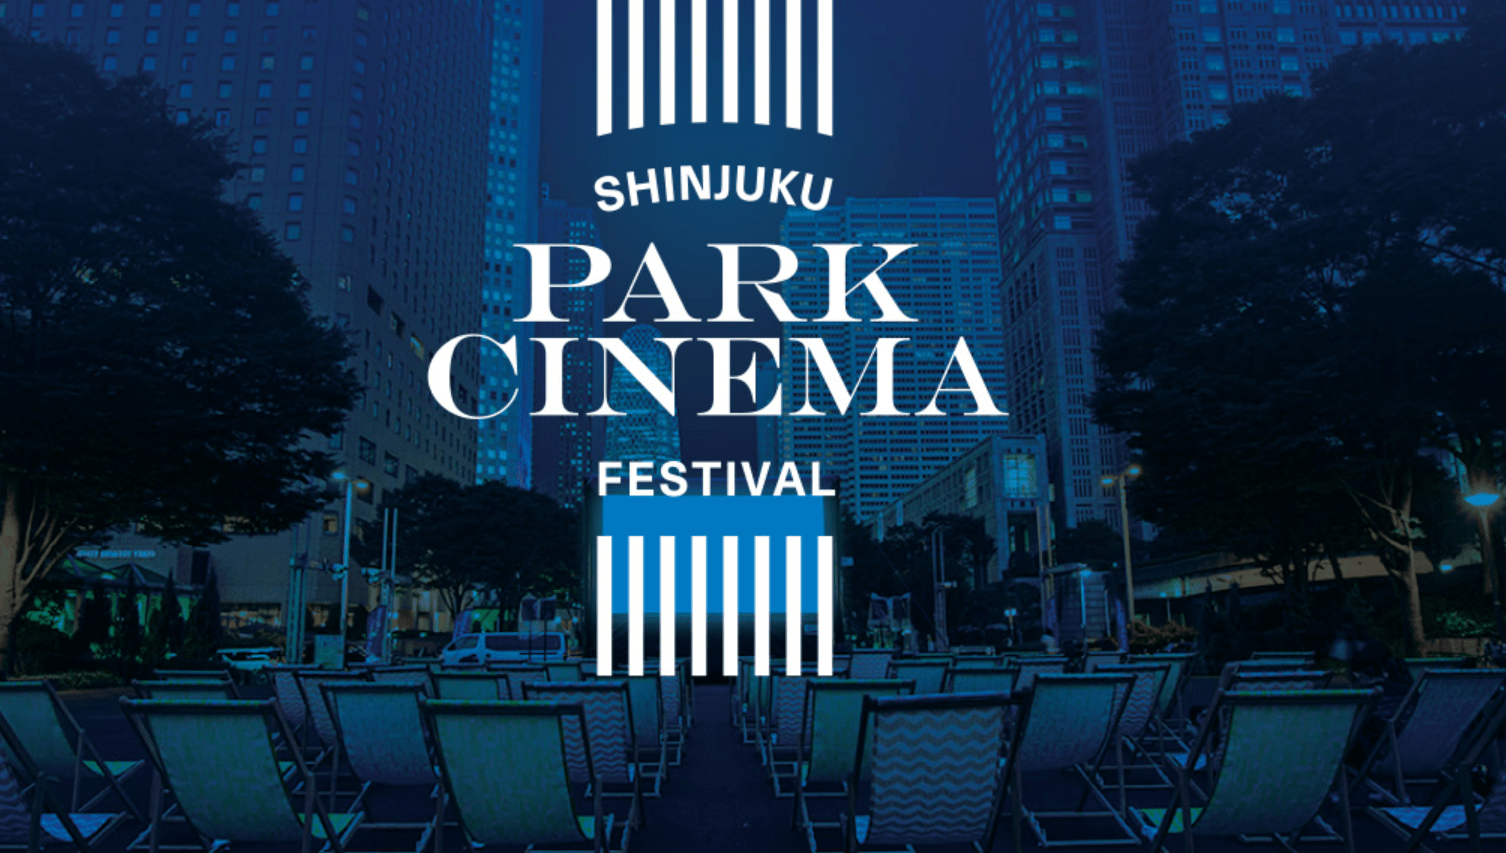 Shijunku park cinema festival